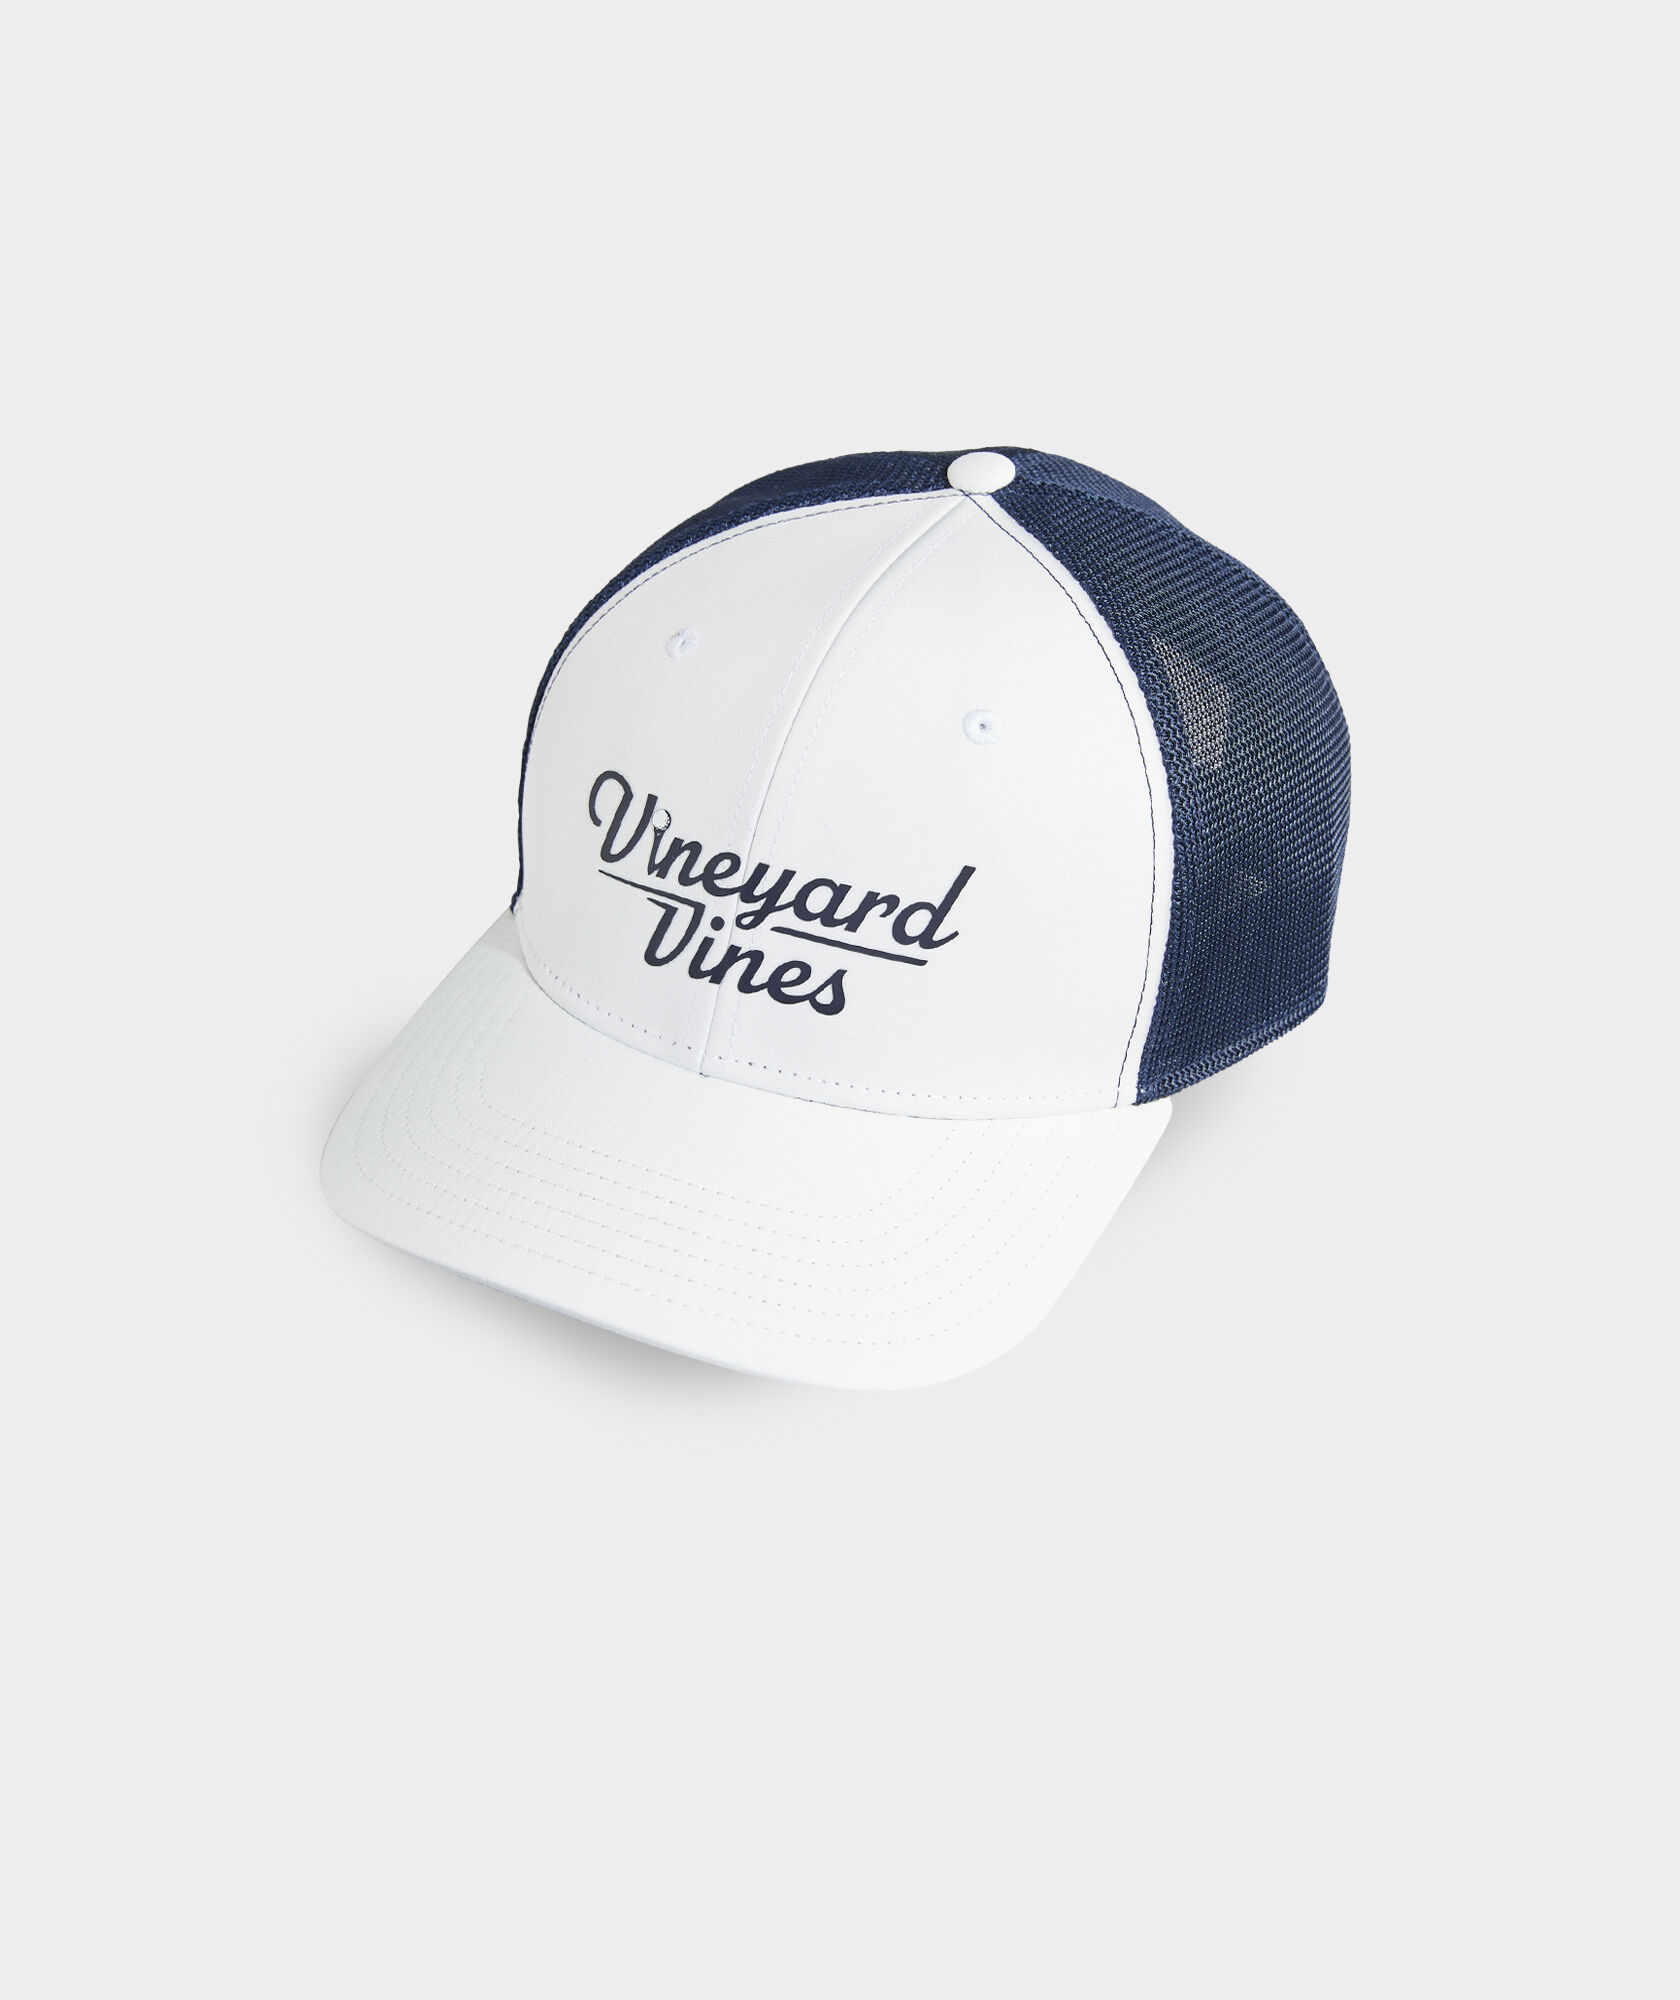 Men's Hats from vineyard vines